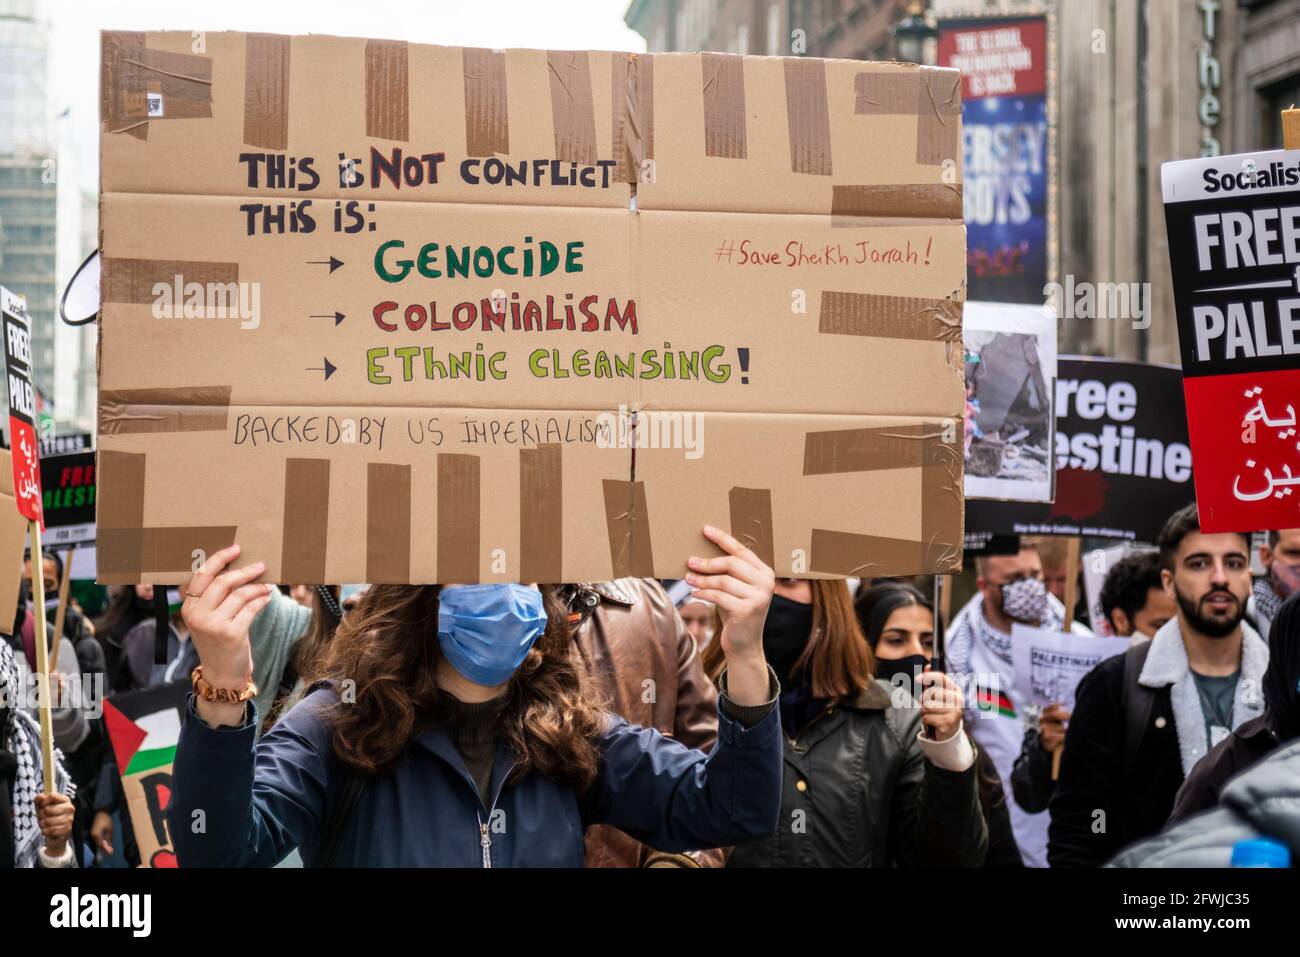 Protestierende bei der Nationalen Demonstration für Palästina, Freie Palästina, in London, Großbritannien. Plakat. Völkermord, Kolonialismus, ethnische Säuberung Stockfoto